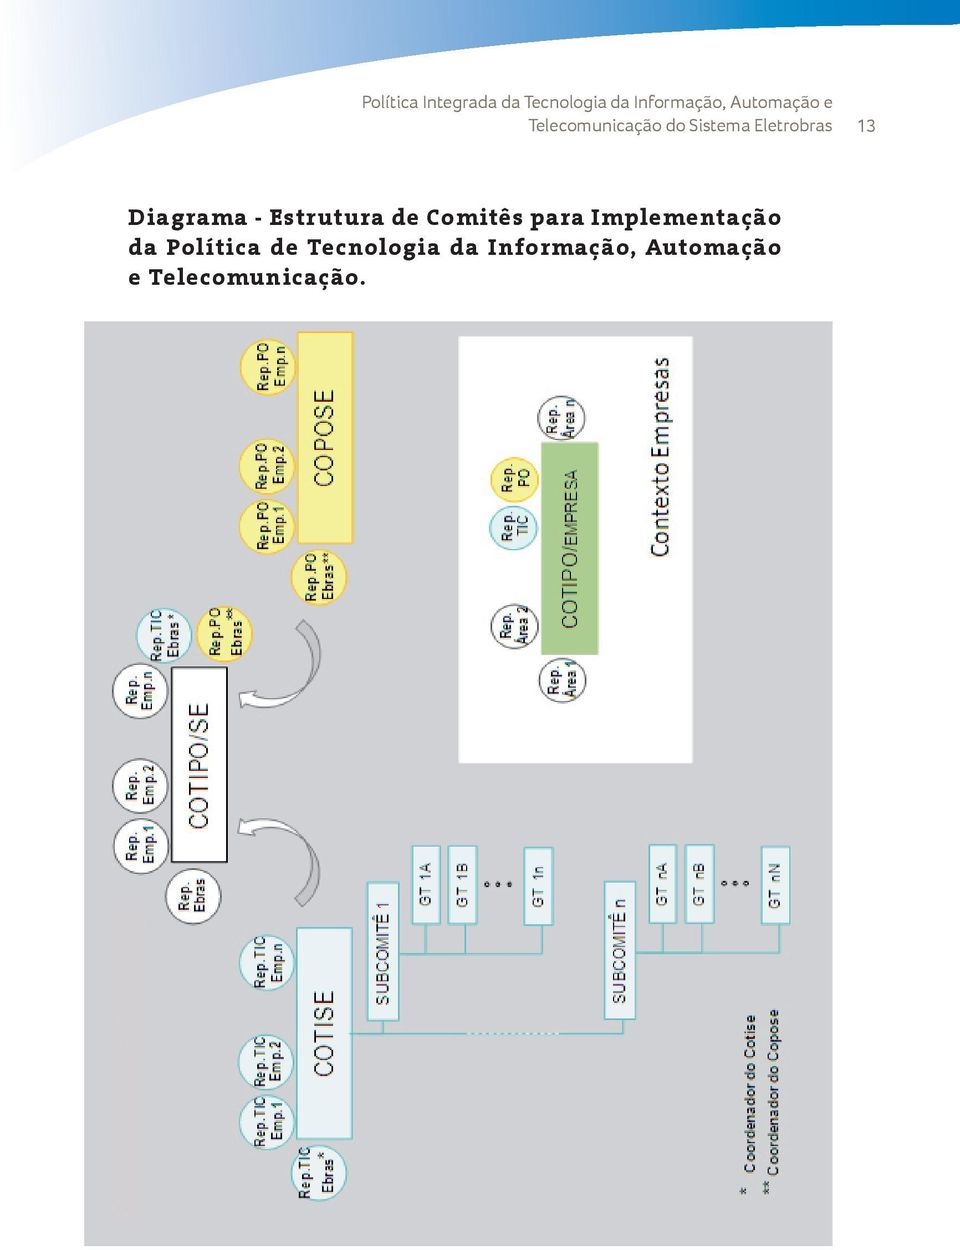 Diagrama - Estrutura de Comitês para Implementação da